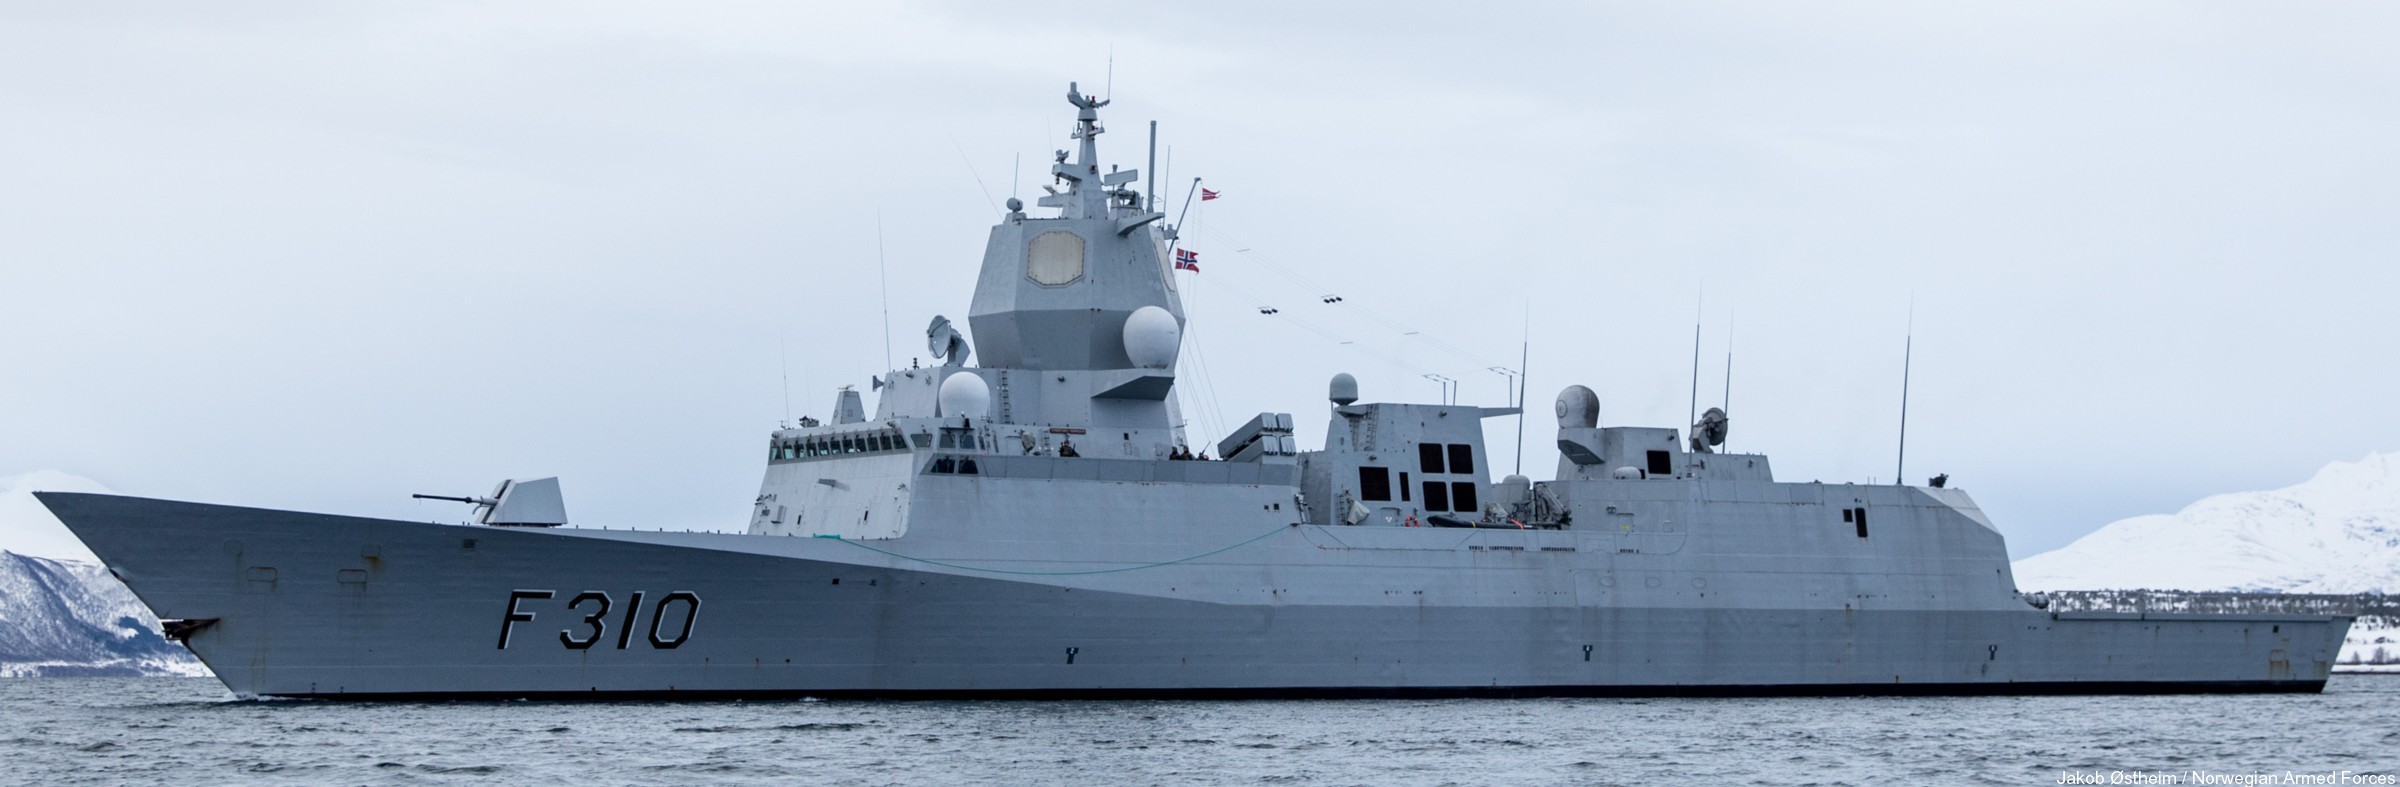 f-310 fridtjof nansen hnoms knm frigate royal norwegian navy sjoforsvaret 15